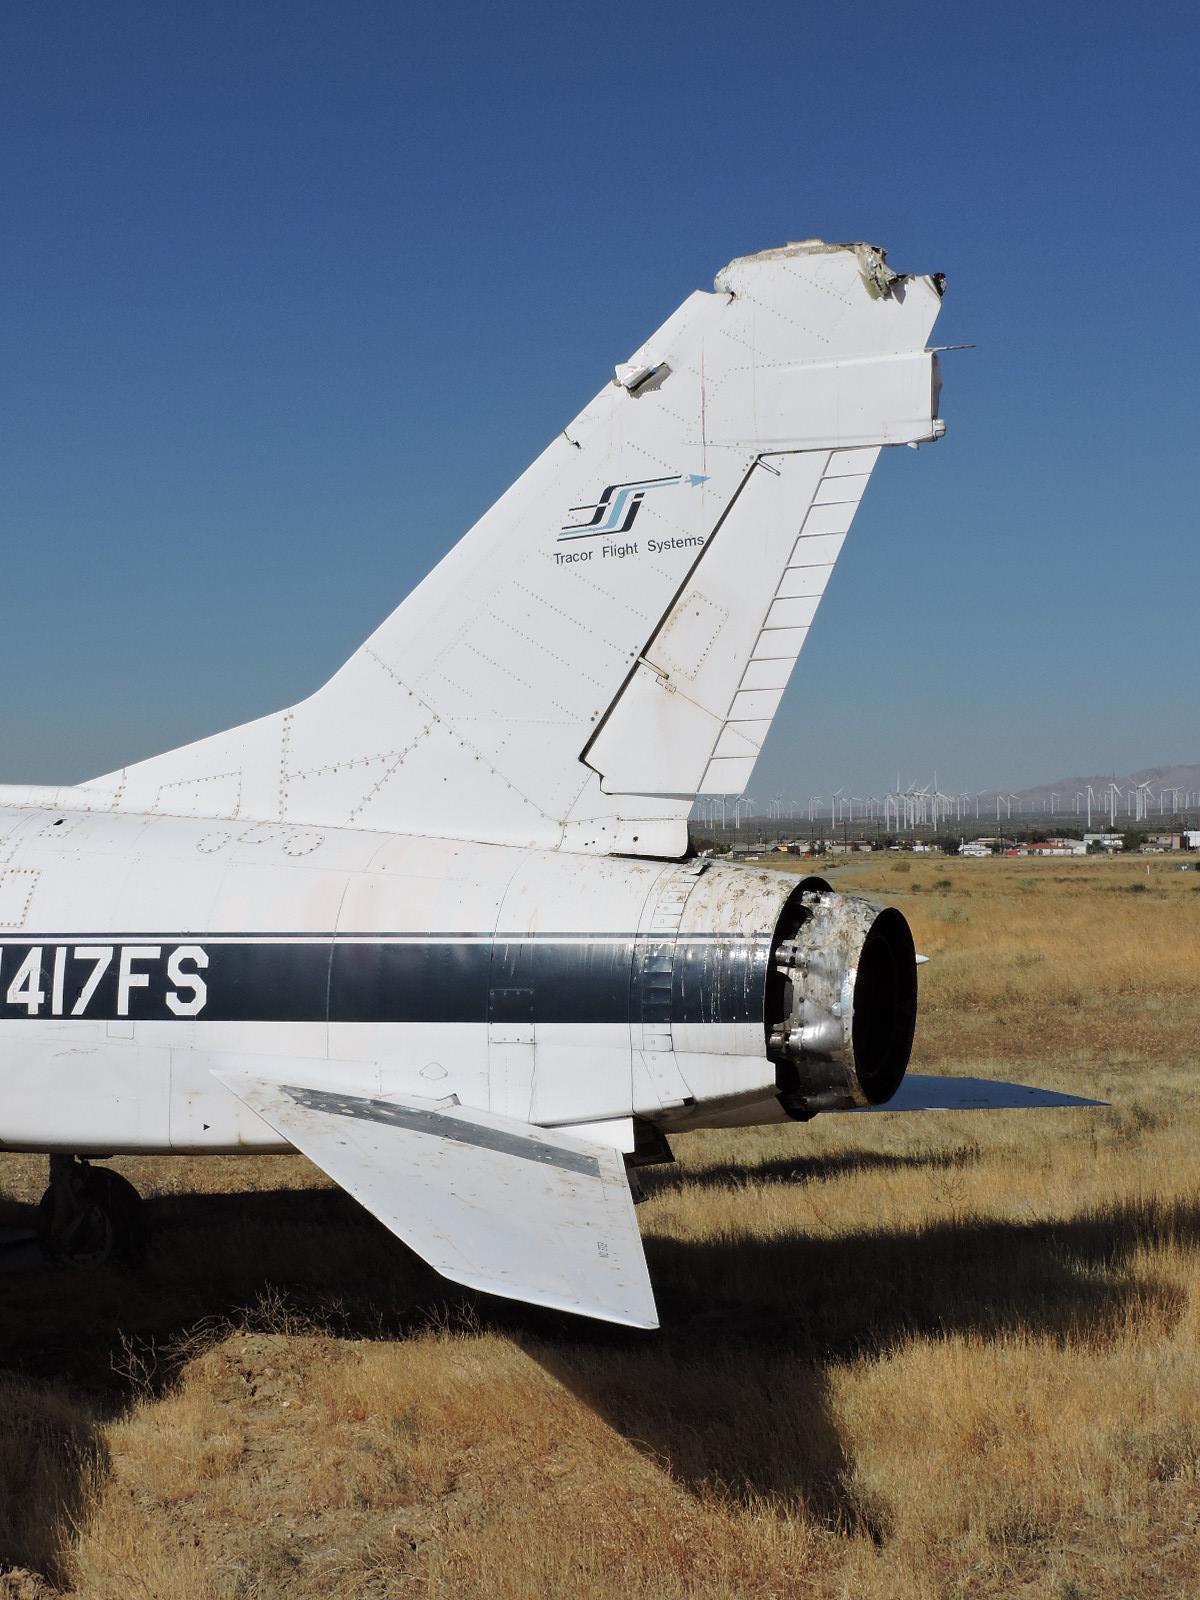 F100 Super Sabre Fighter Jet -- N417FS -- See Description